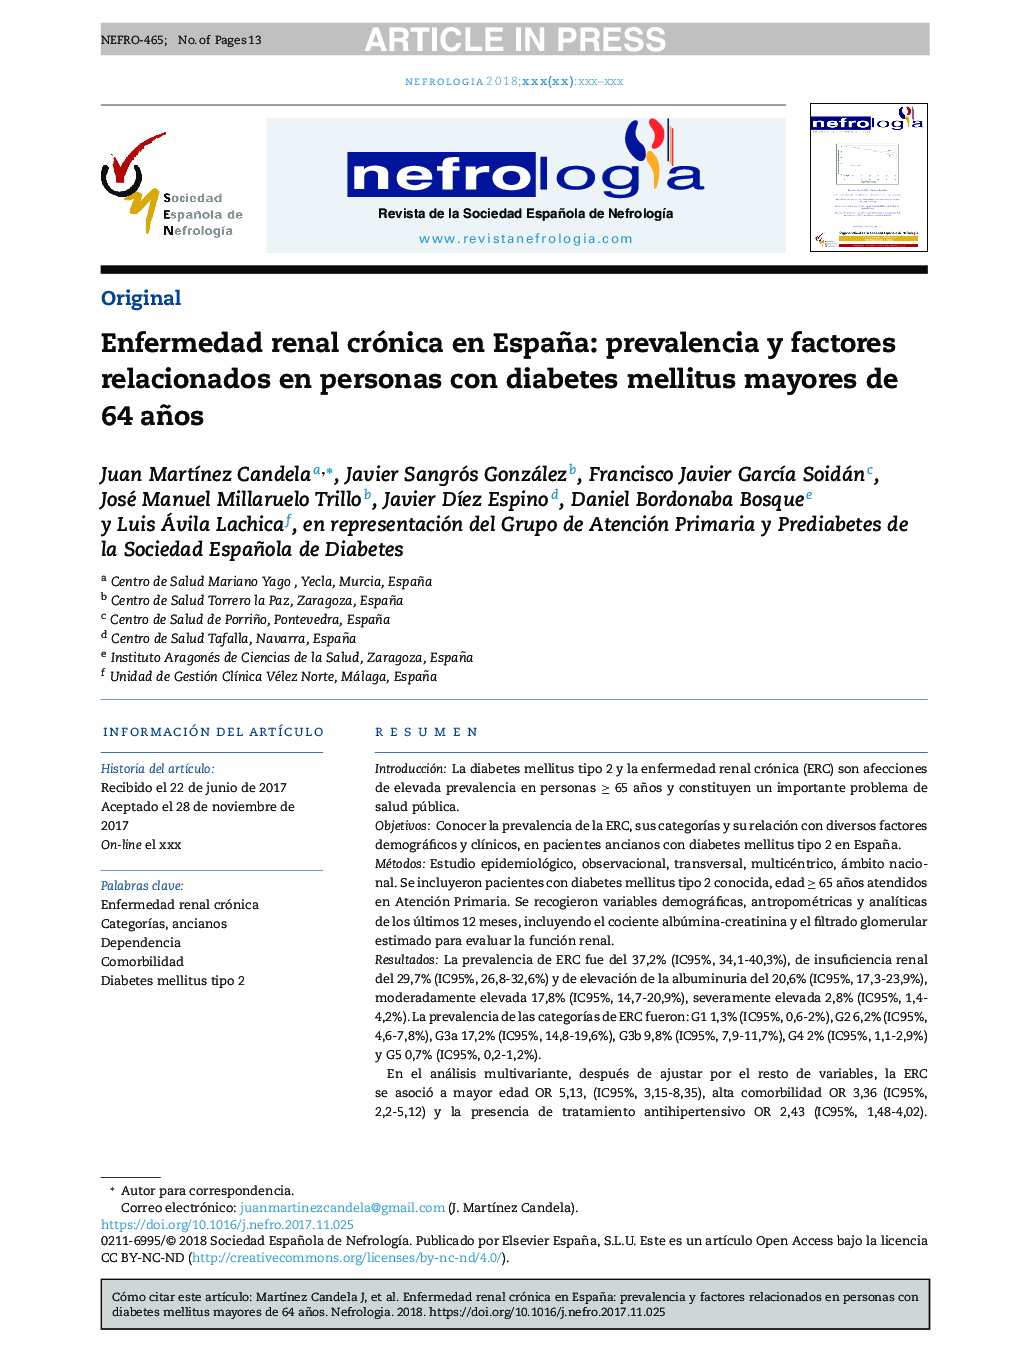 Enfermedad renal crónica en España: prevalencia y factores relacionados en personas con diabetes mellitus mayores de 64 años